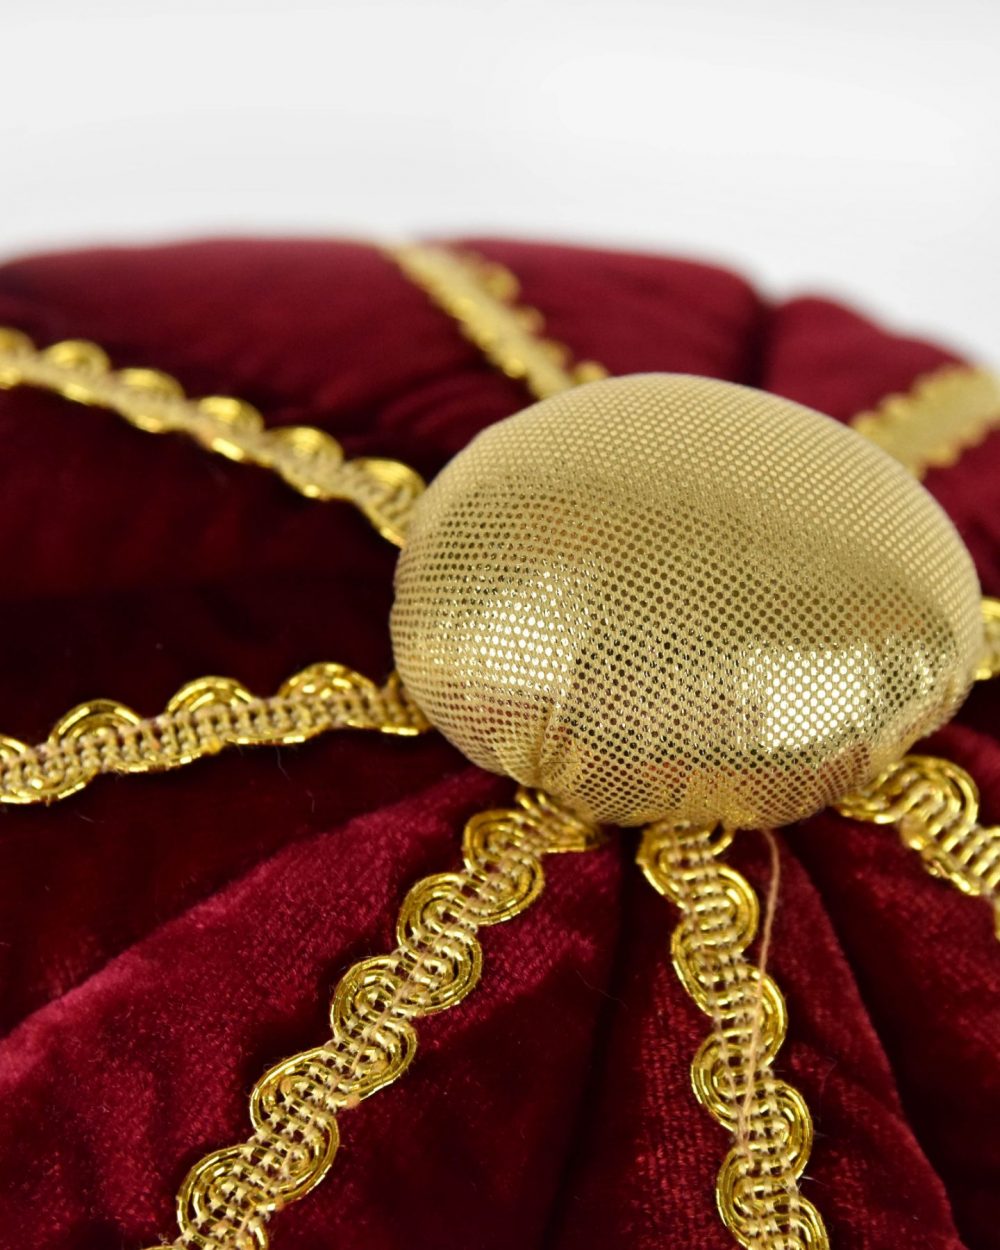 Närbild på kungakrona som visar den guldiga toppknoppen samt ovansidan av kronan som är i röd sammet med gulddetaljer.